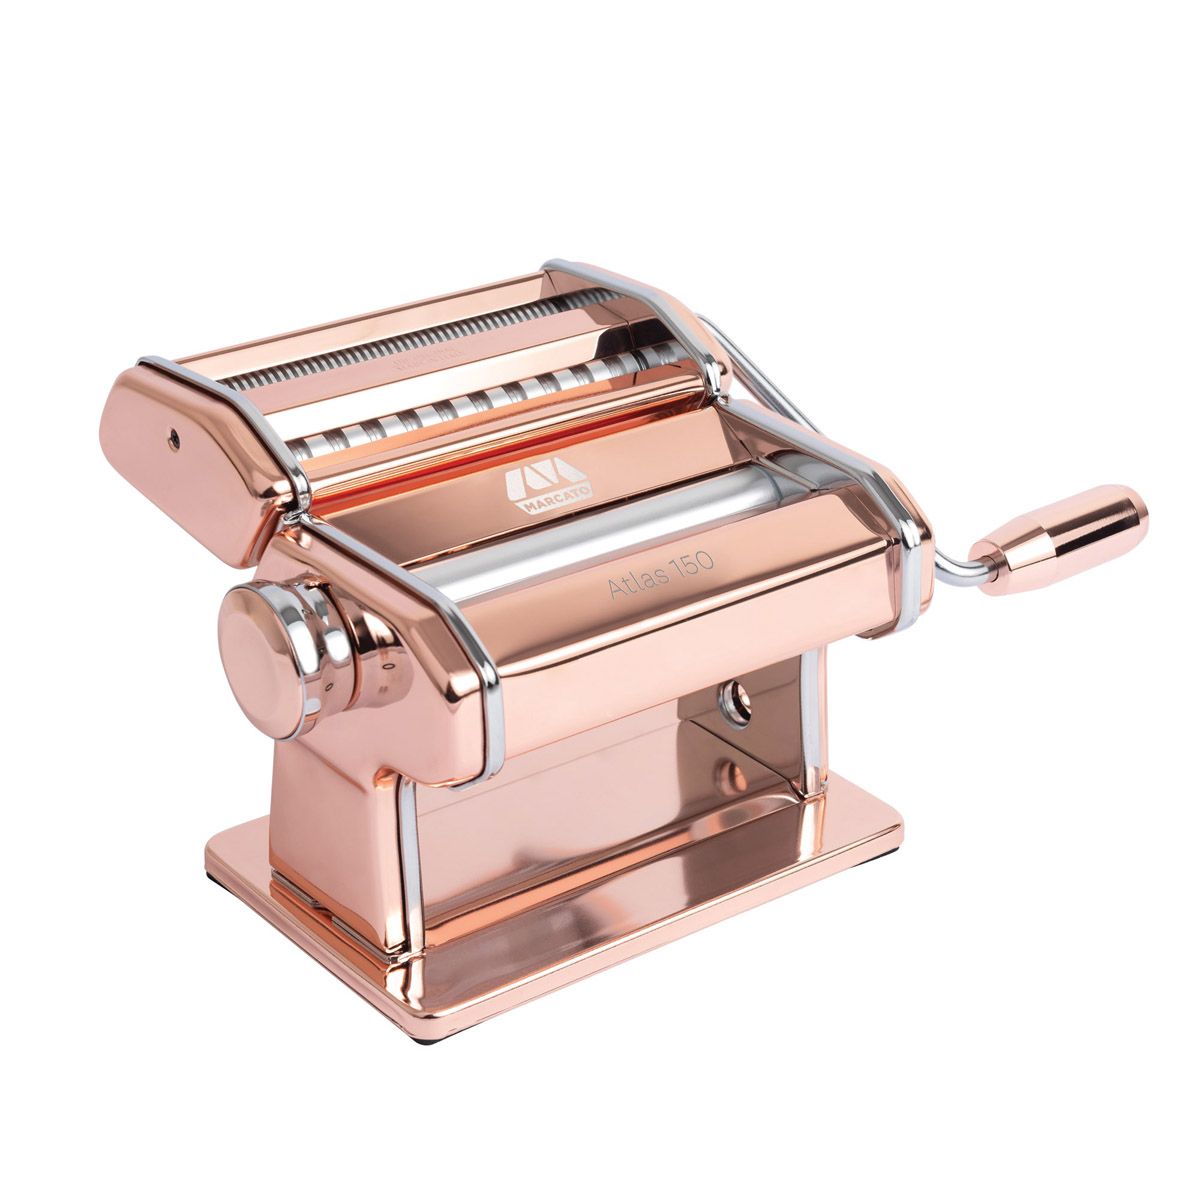 Marcato 150 Pasta Machine, Copper Steel